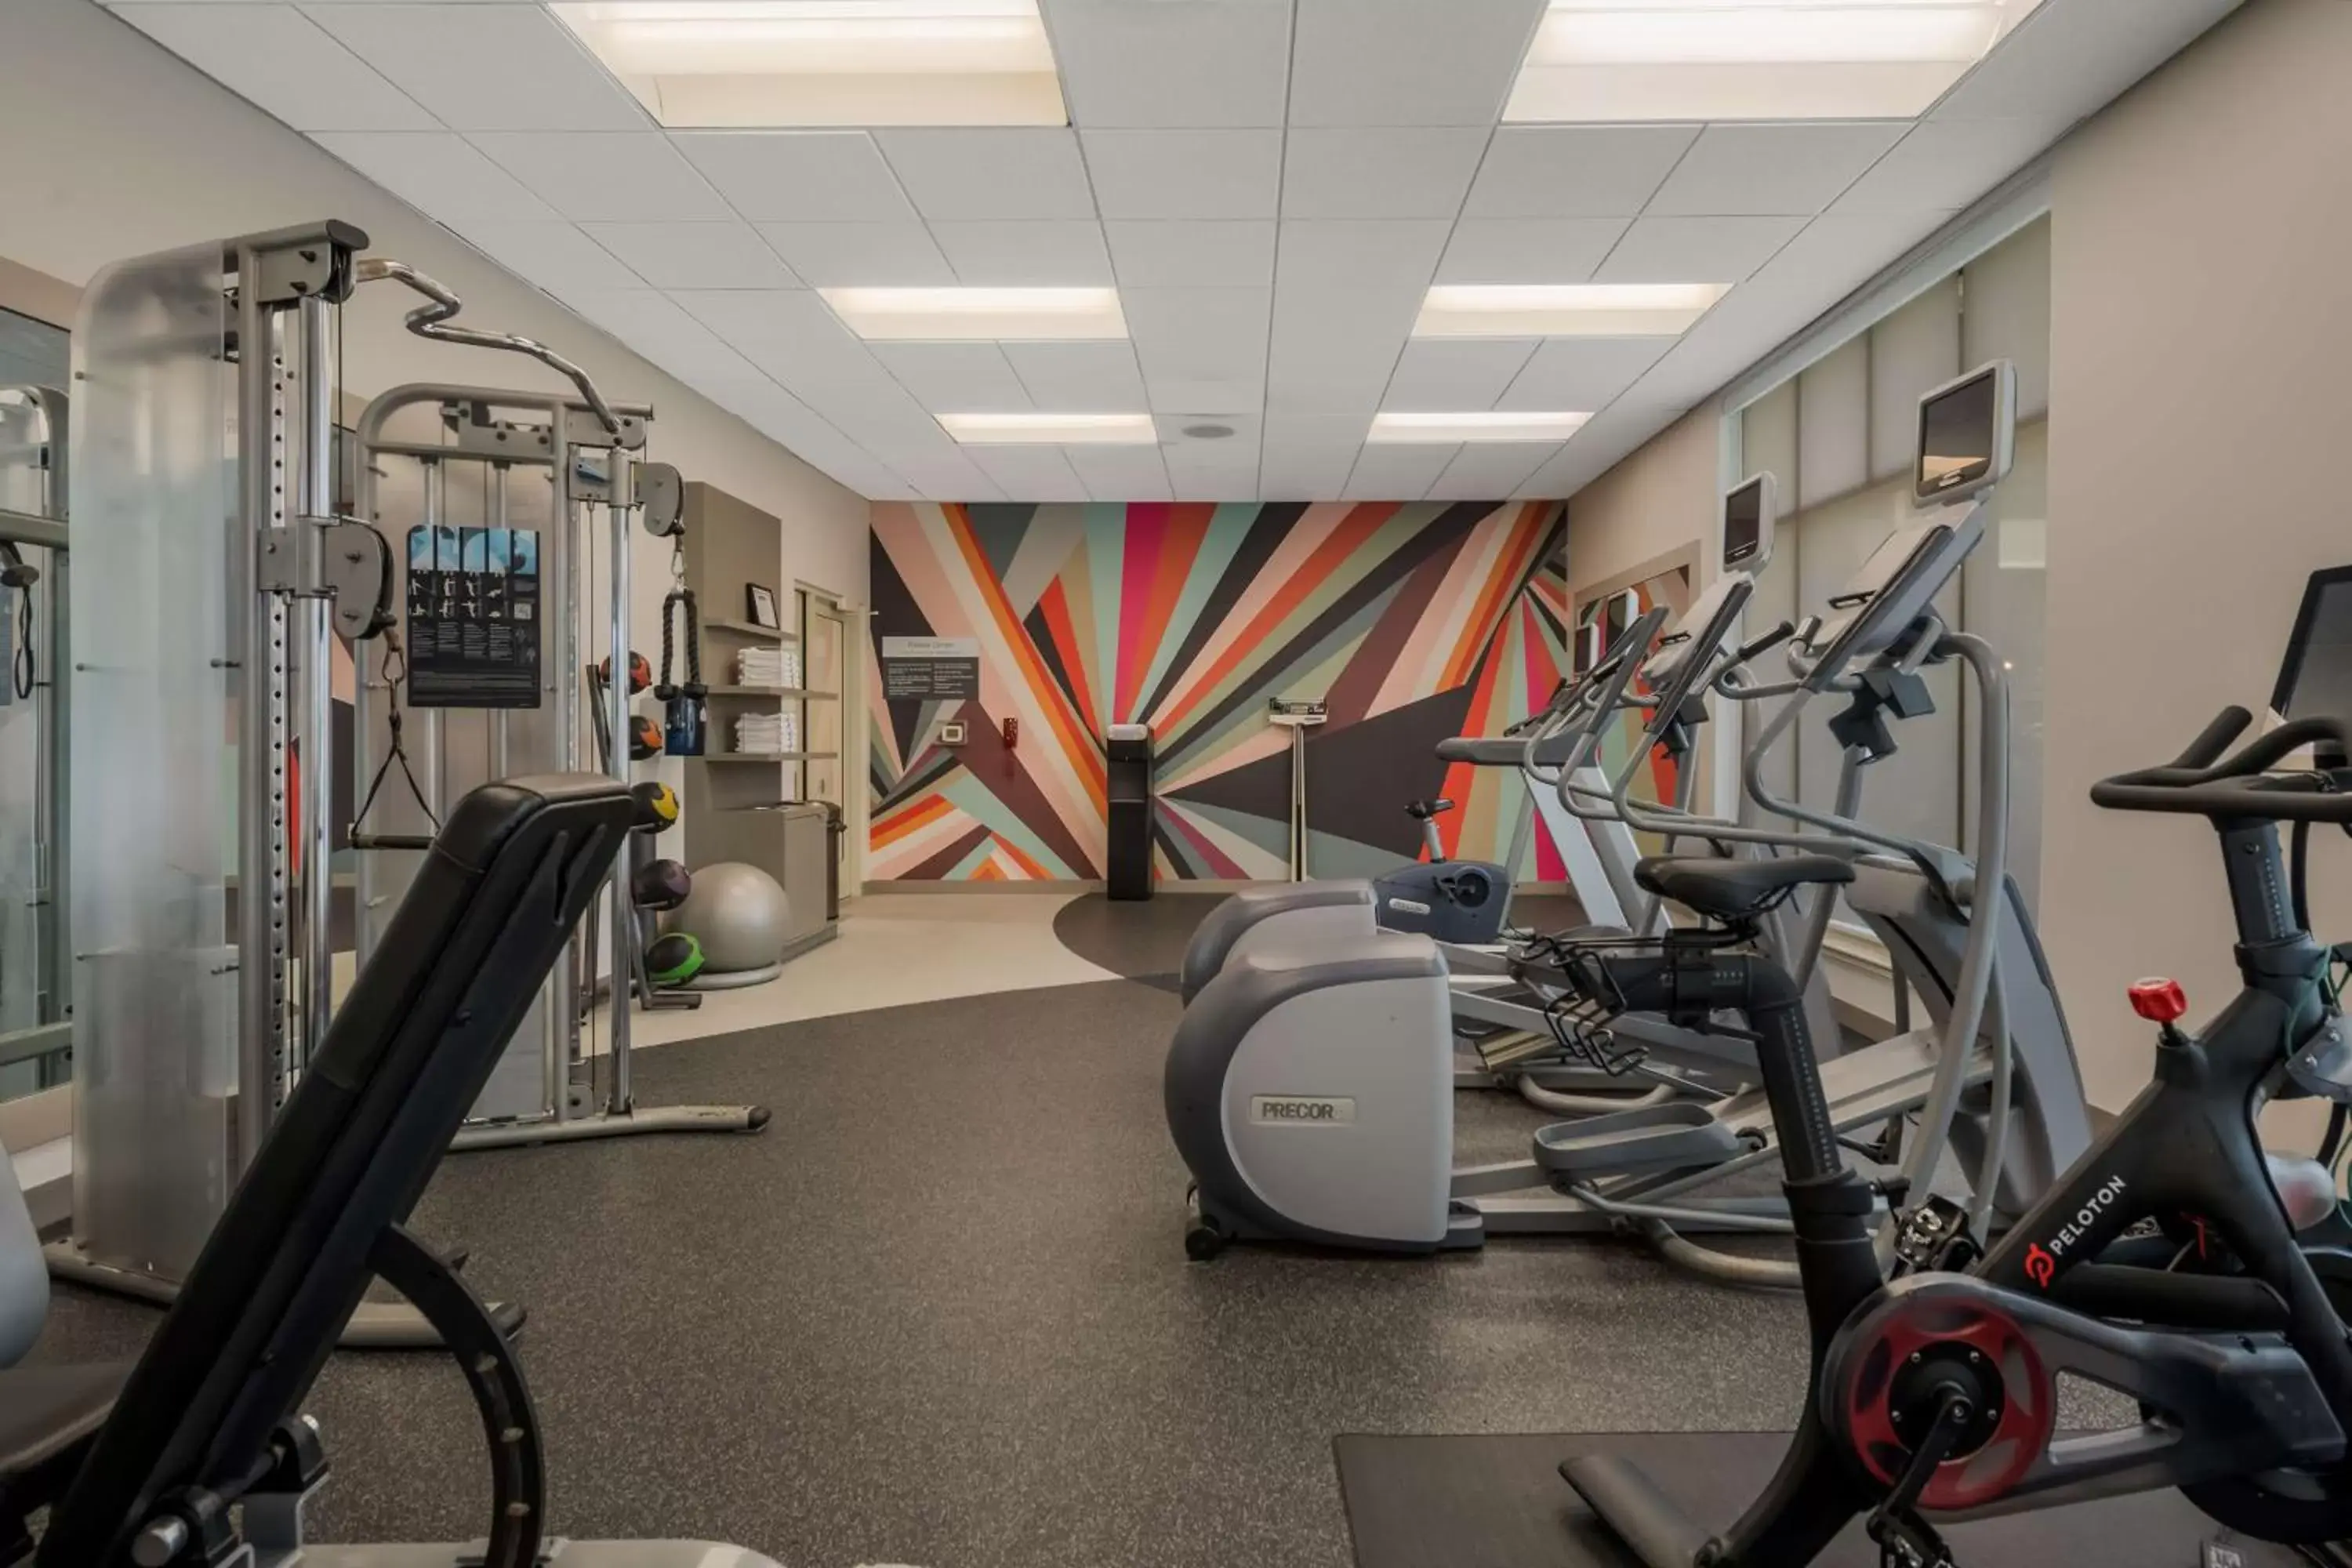 Fitness centre/facilities, Fitness Center/Facilities in Hilton Garden Inn Rockford